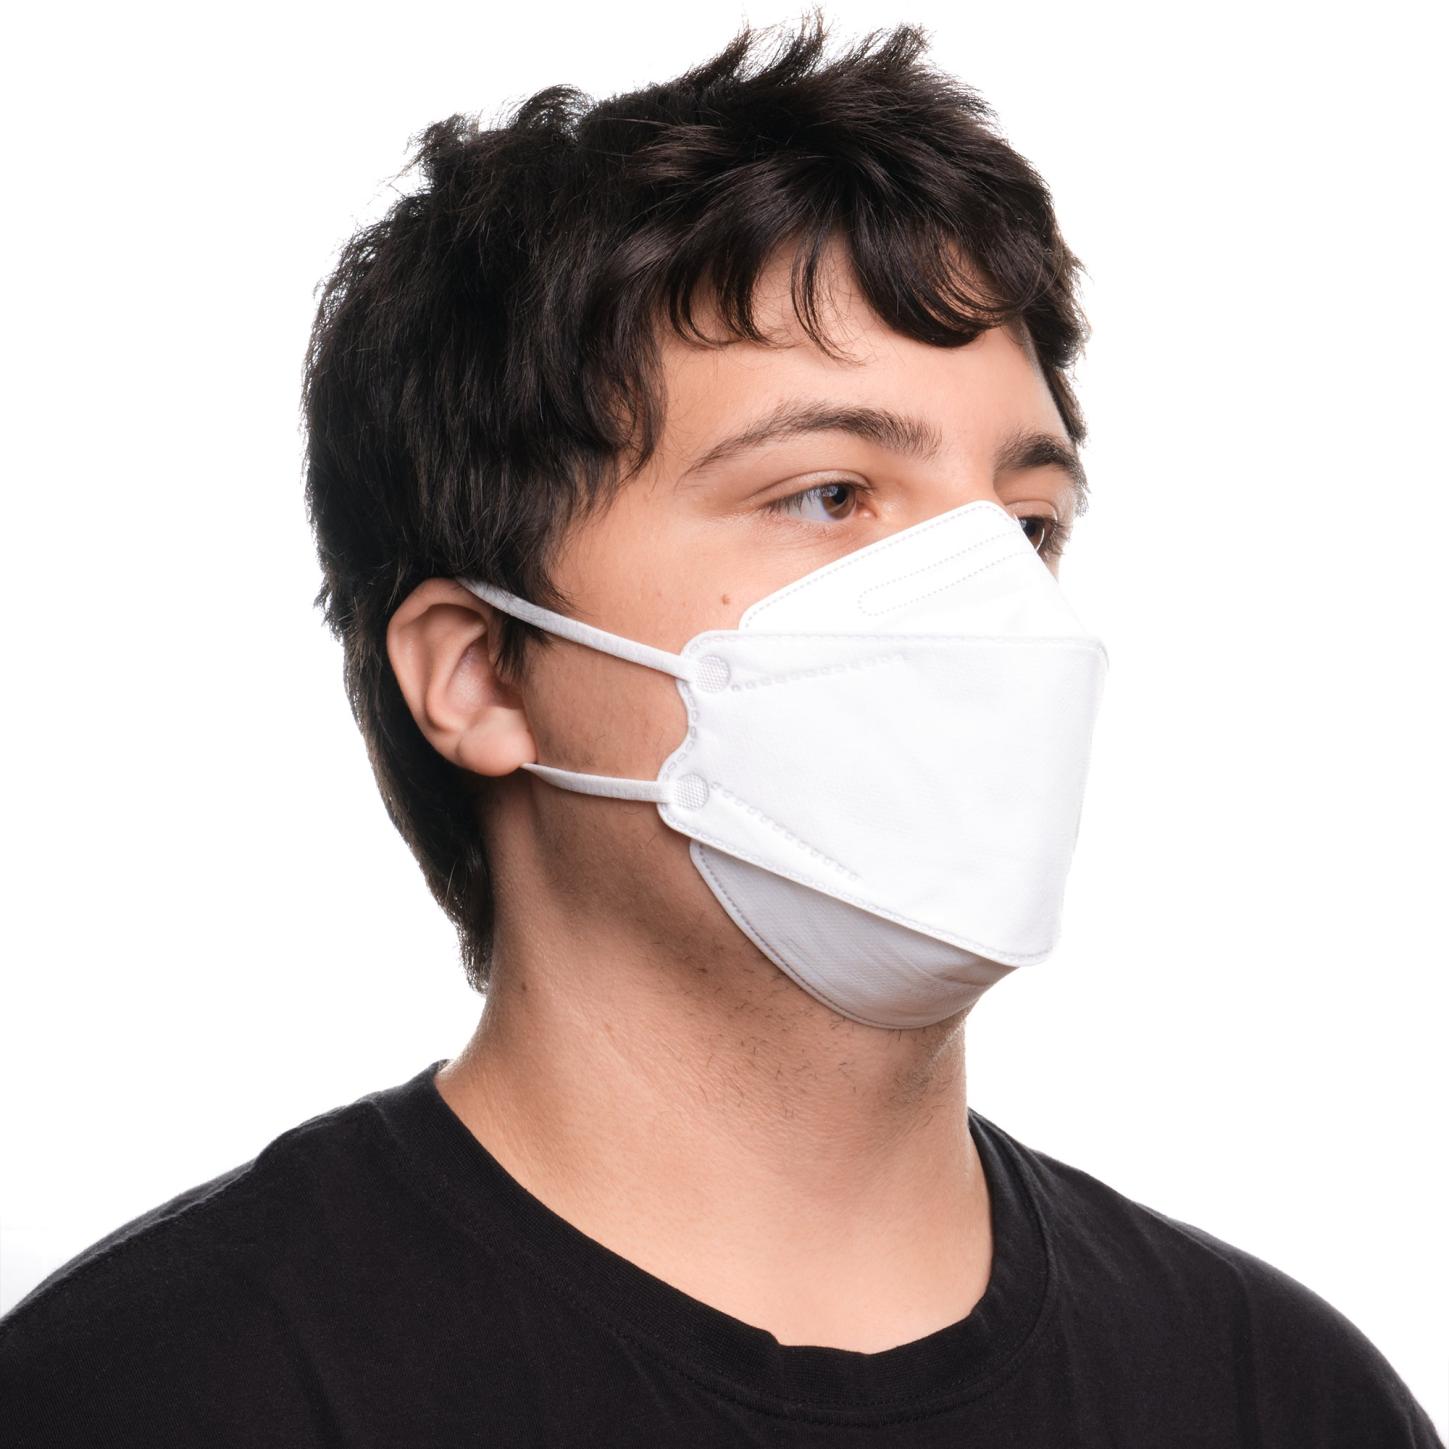 Maske schützt Gesundheit